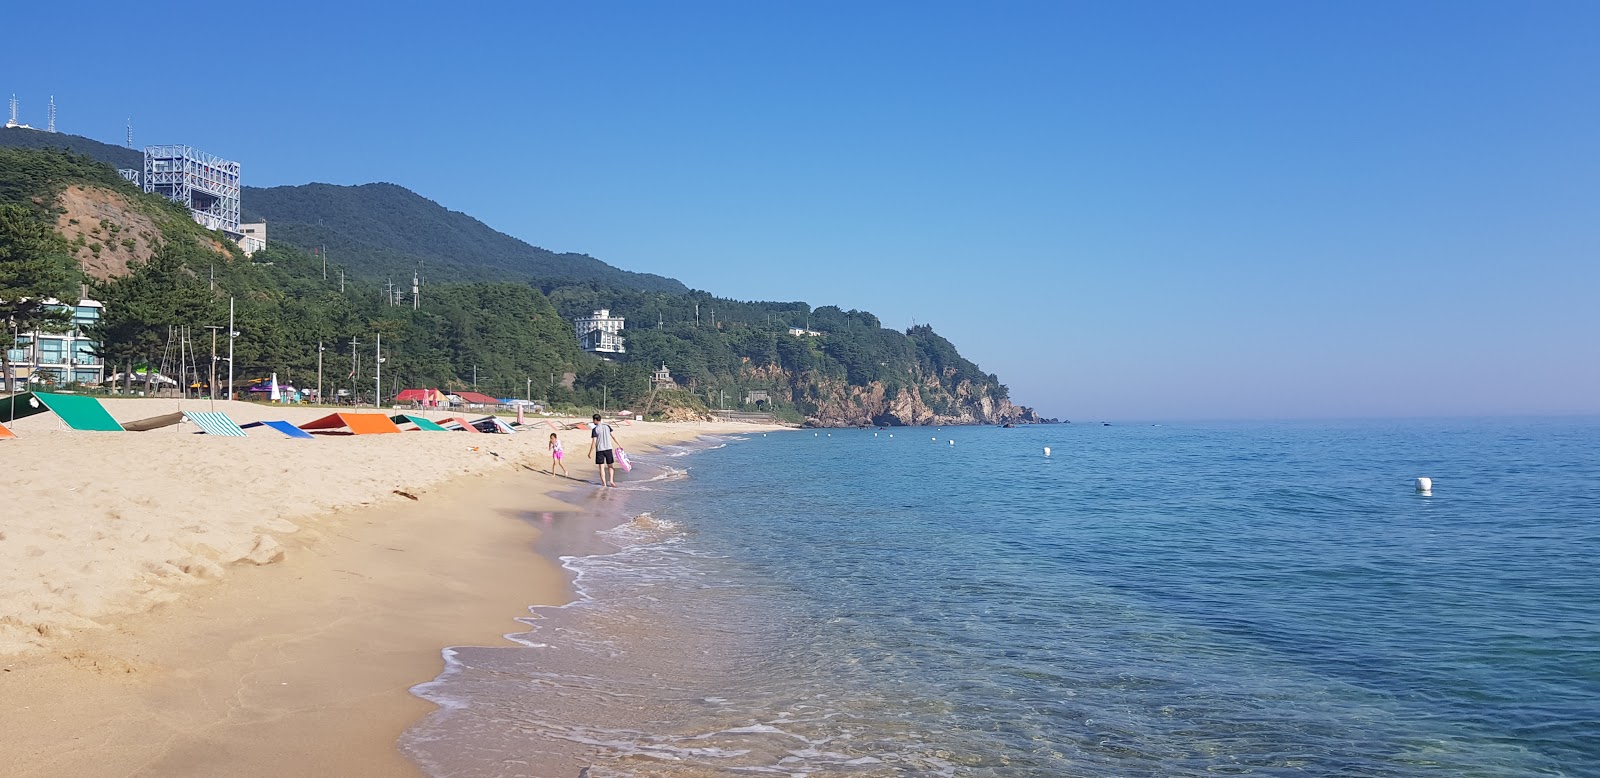 Fotografie cu Deungmyeong Beach cu o suprafață de nisip strălucitor